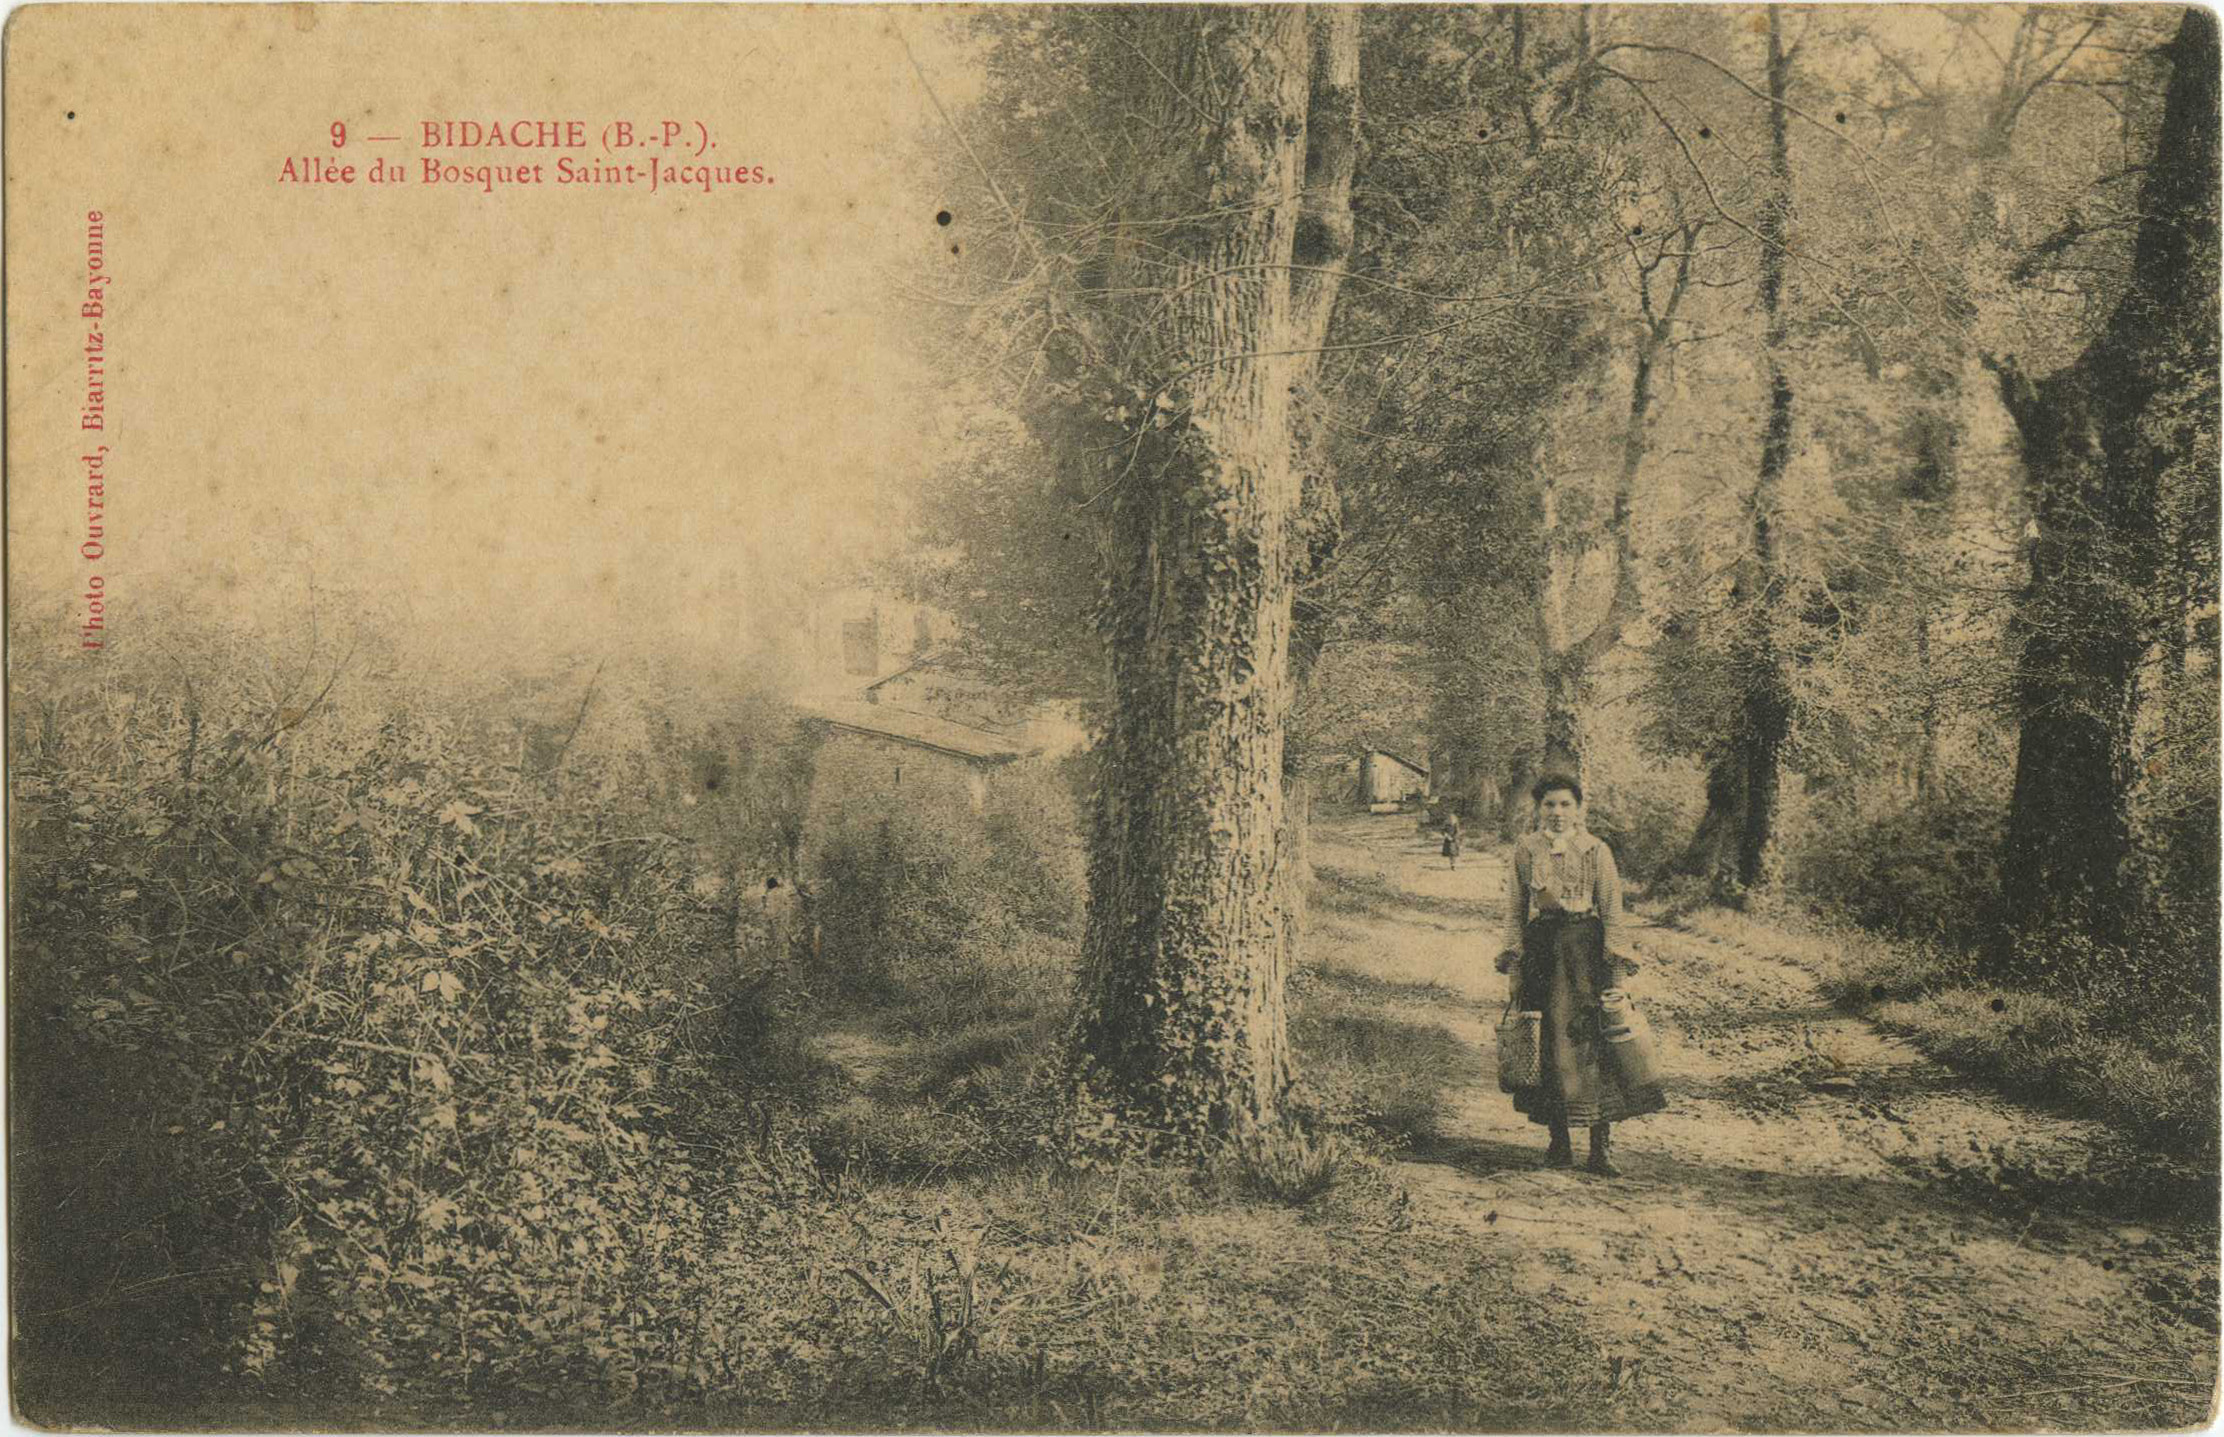 Bidache - Allée du Bosquet Saint-Jacques.